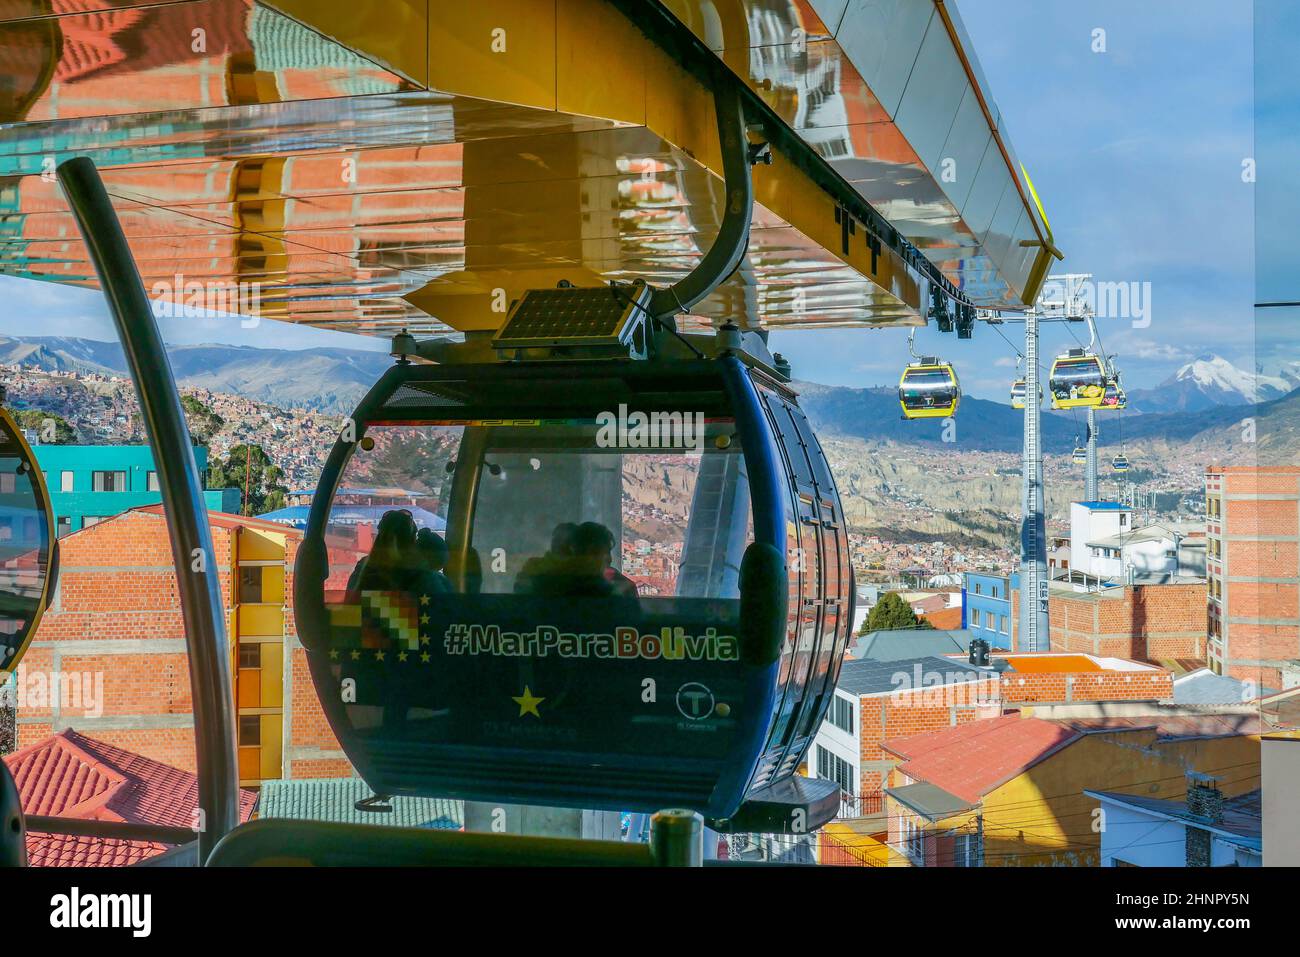 Système de téléphériques ou de funiculaires orange sur les toits et immeubles de la capitale bolivienne, La Paz, Bolivie Banque D'Images